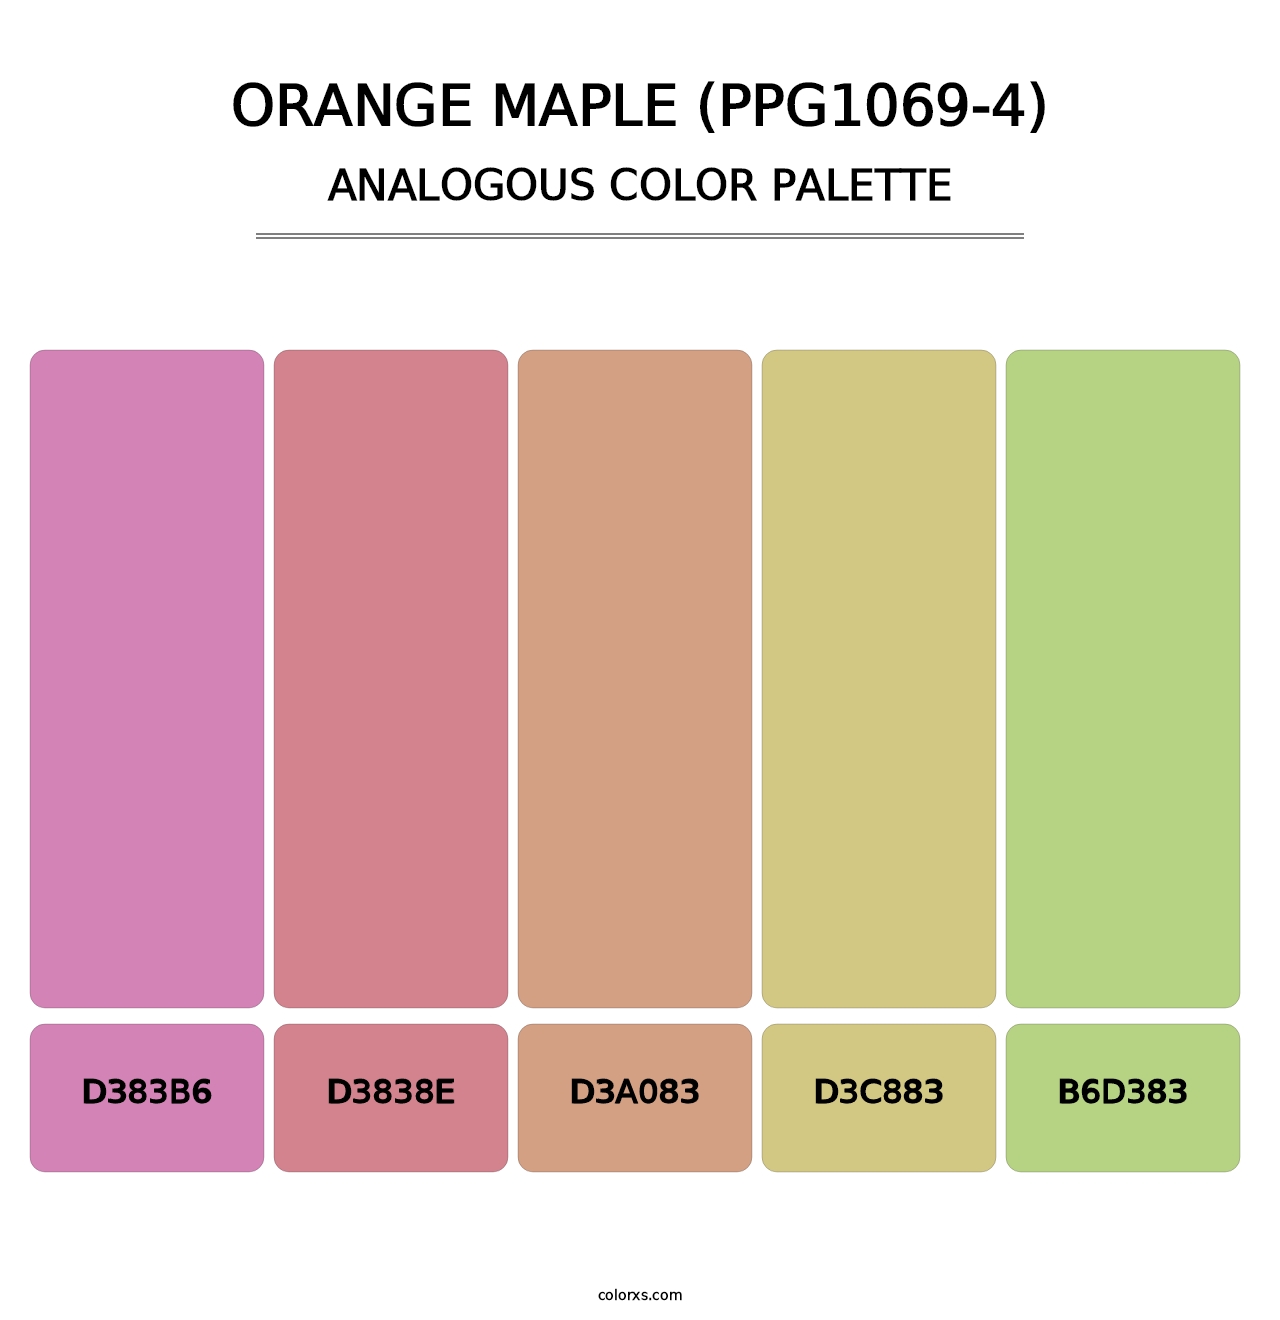 Orange Maple (PPG1069-4) - Analogous Color Palette